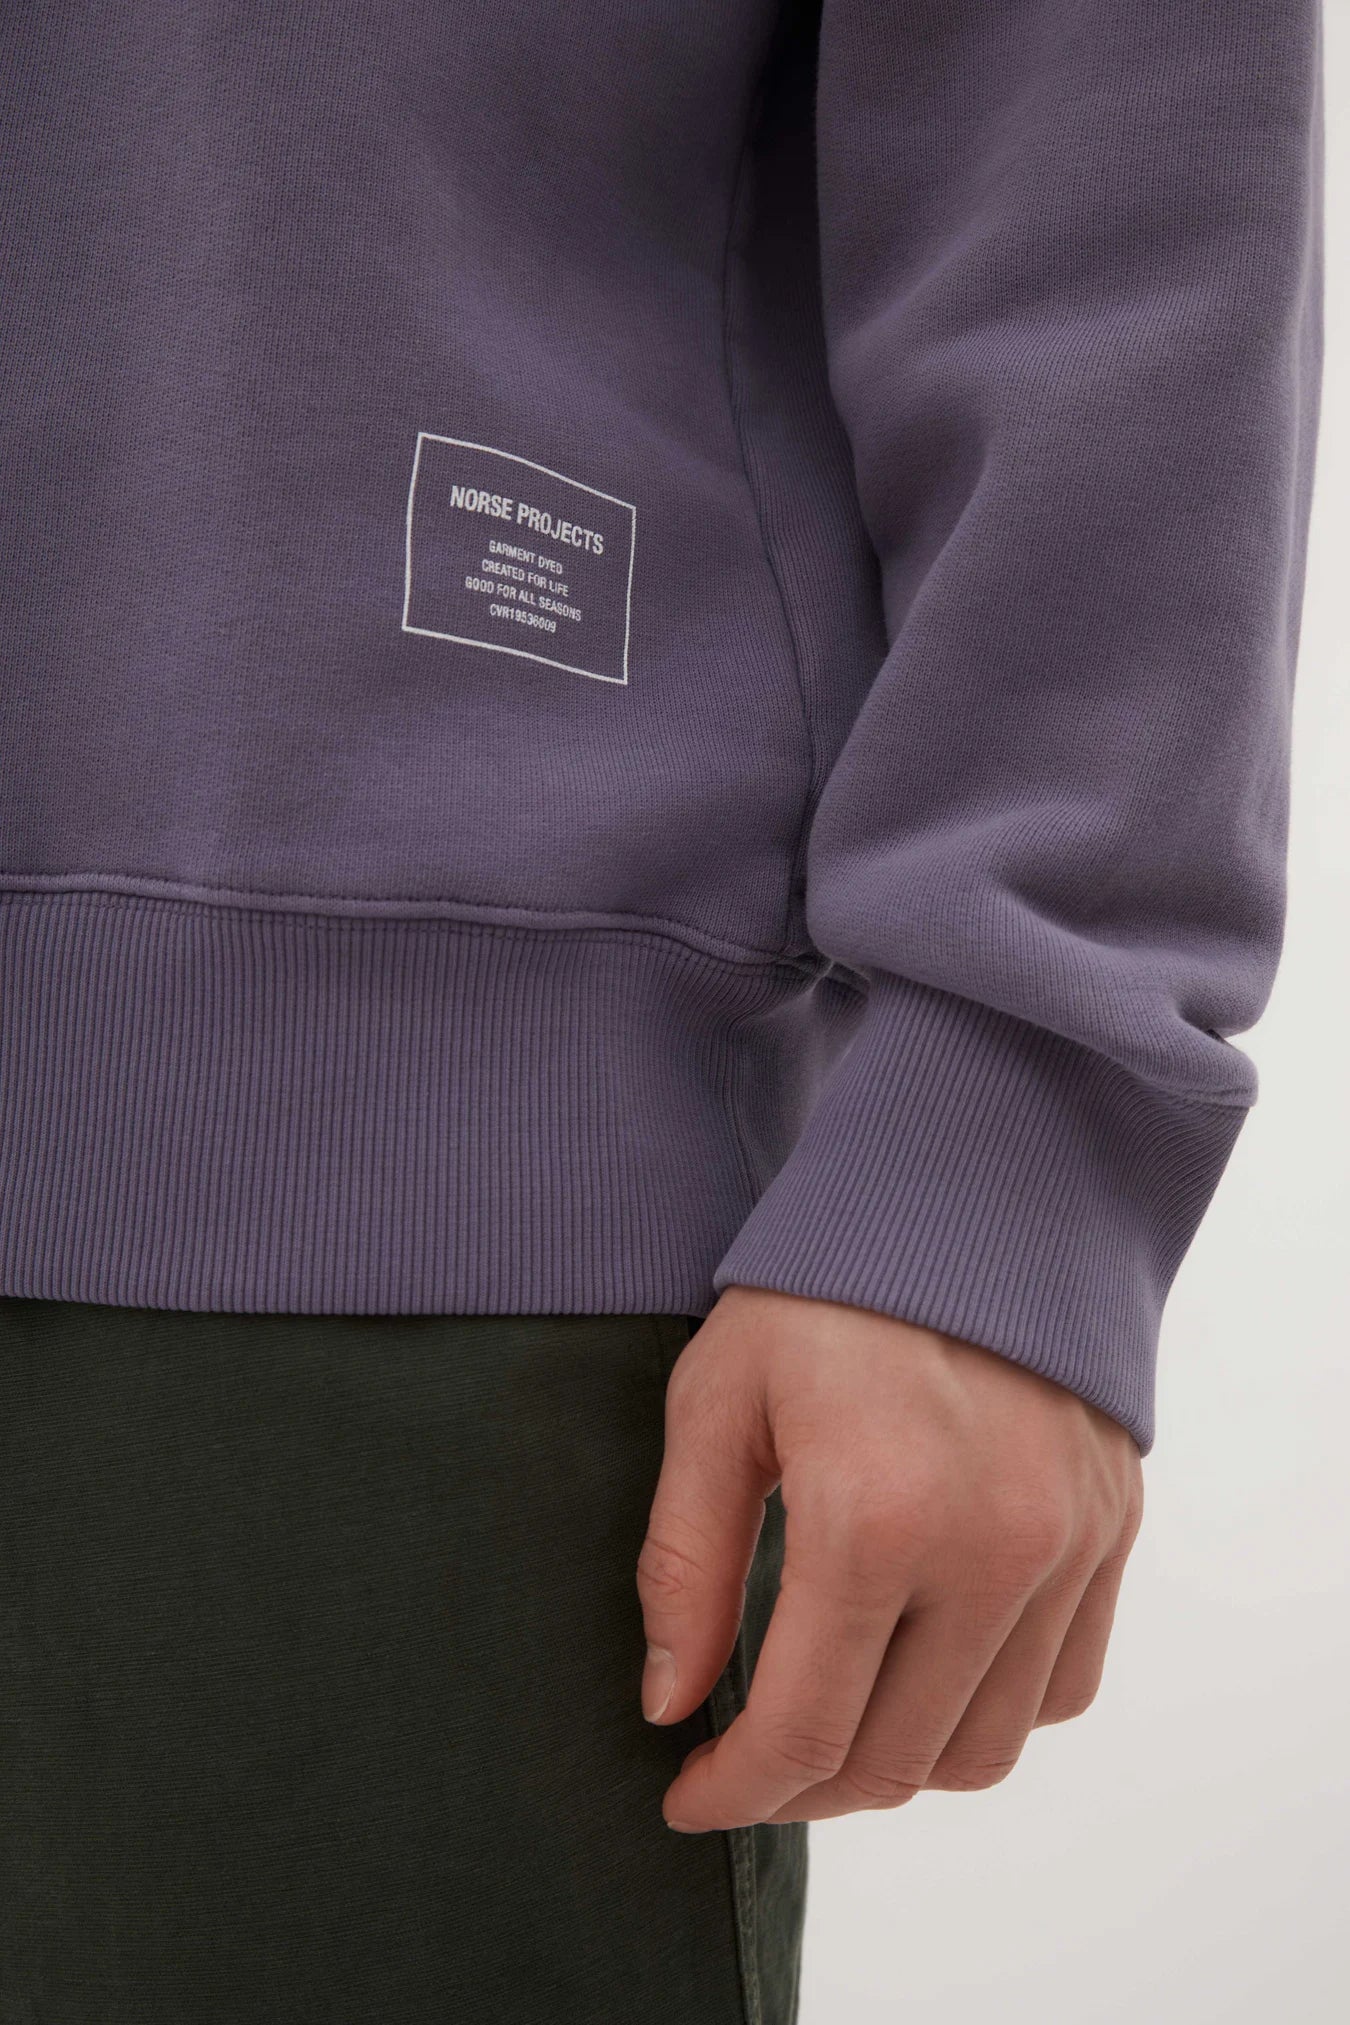 Sweatshirt Marten - violet crépuscule